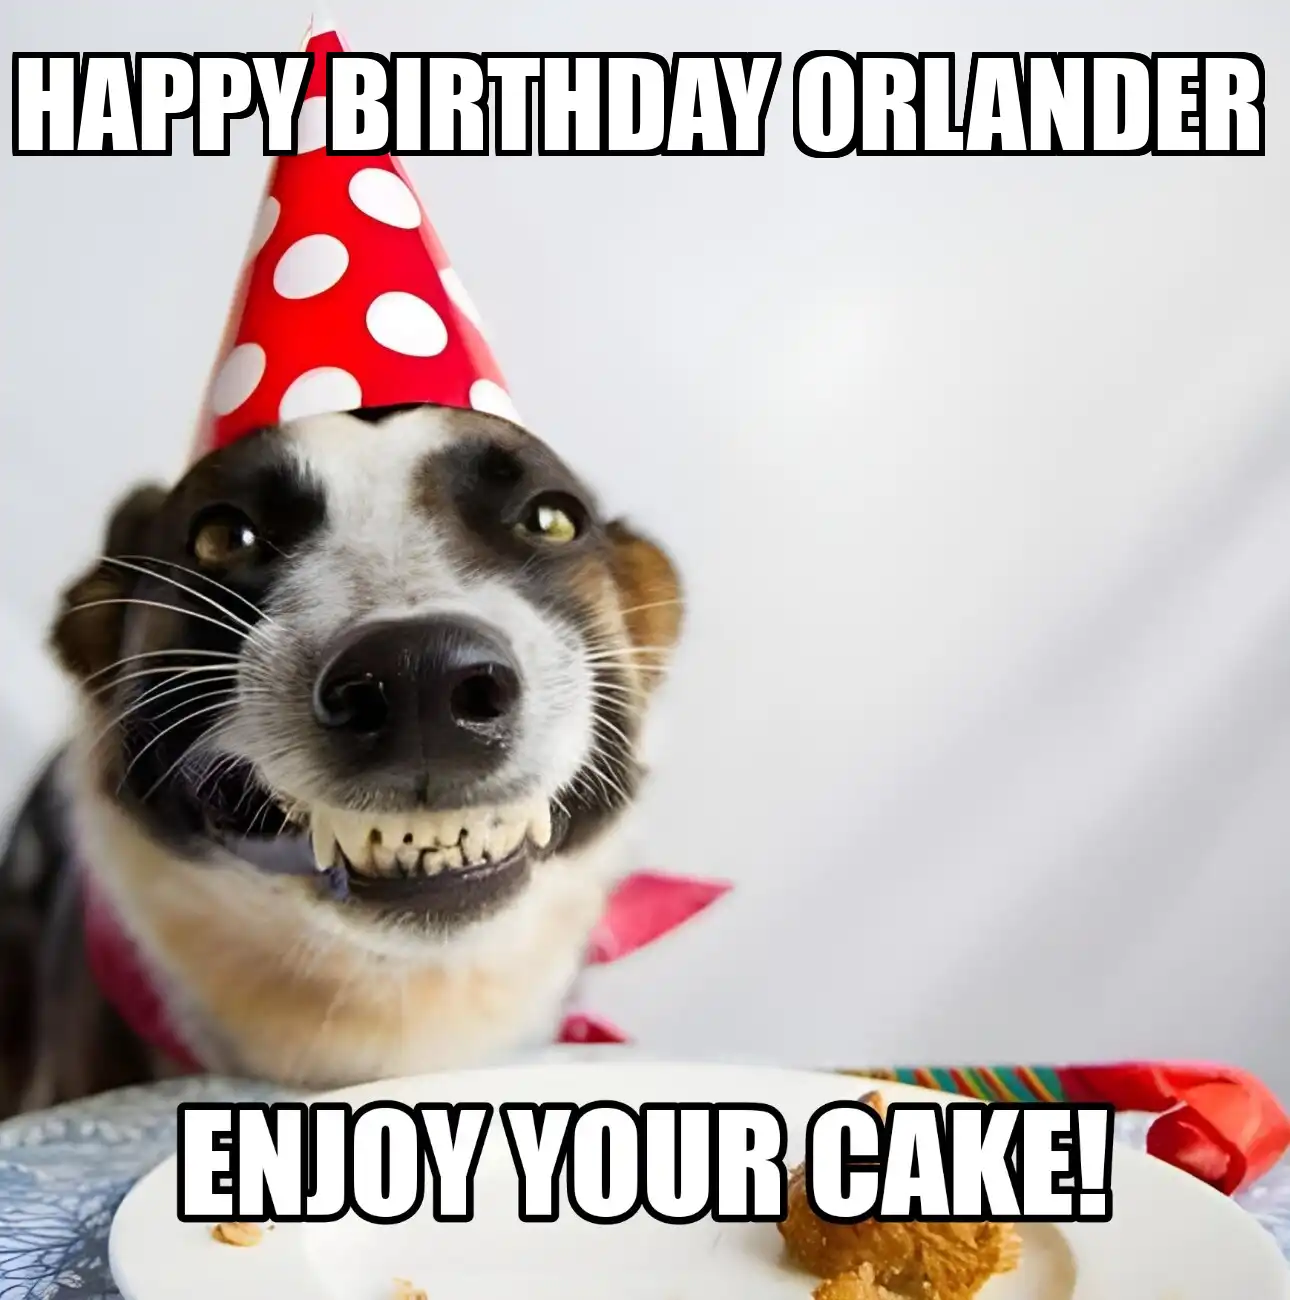 Happy Birthday Orlander Enjoy Your Cake Dog Meme